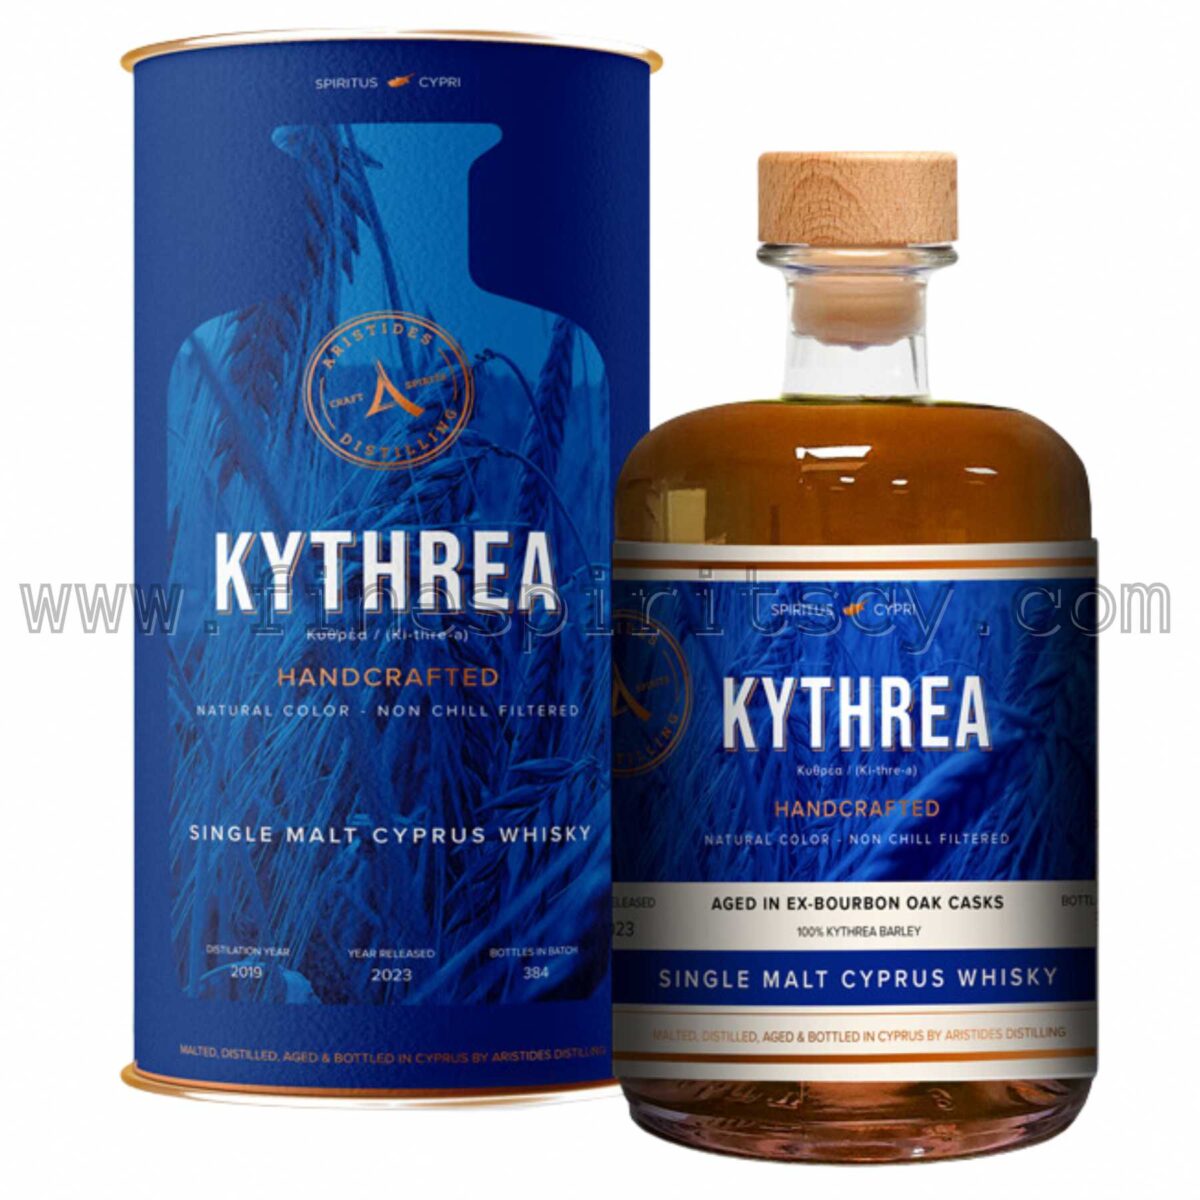 Kythrea Ex Bourbon Cask Cyprus Cypriot Whisky Price Kypriako Kipriako Kipros